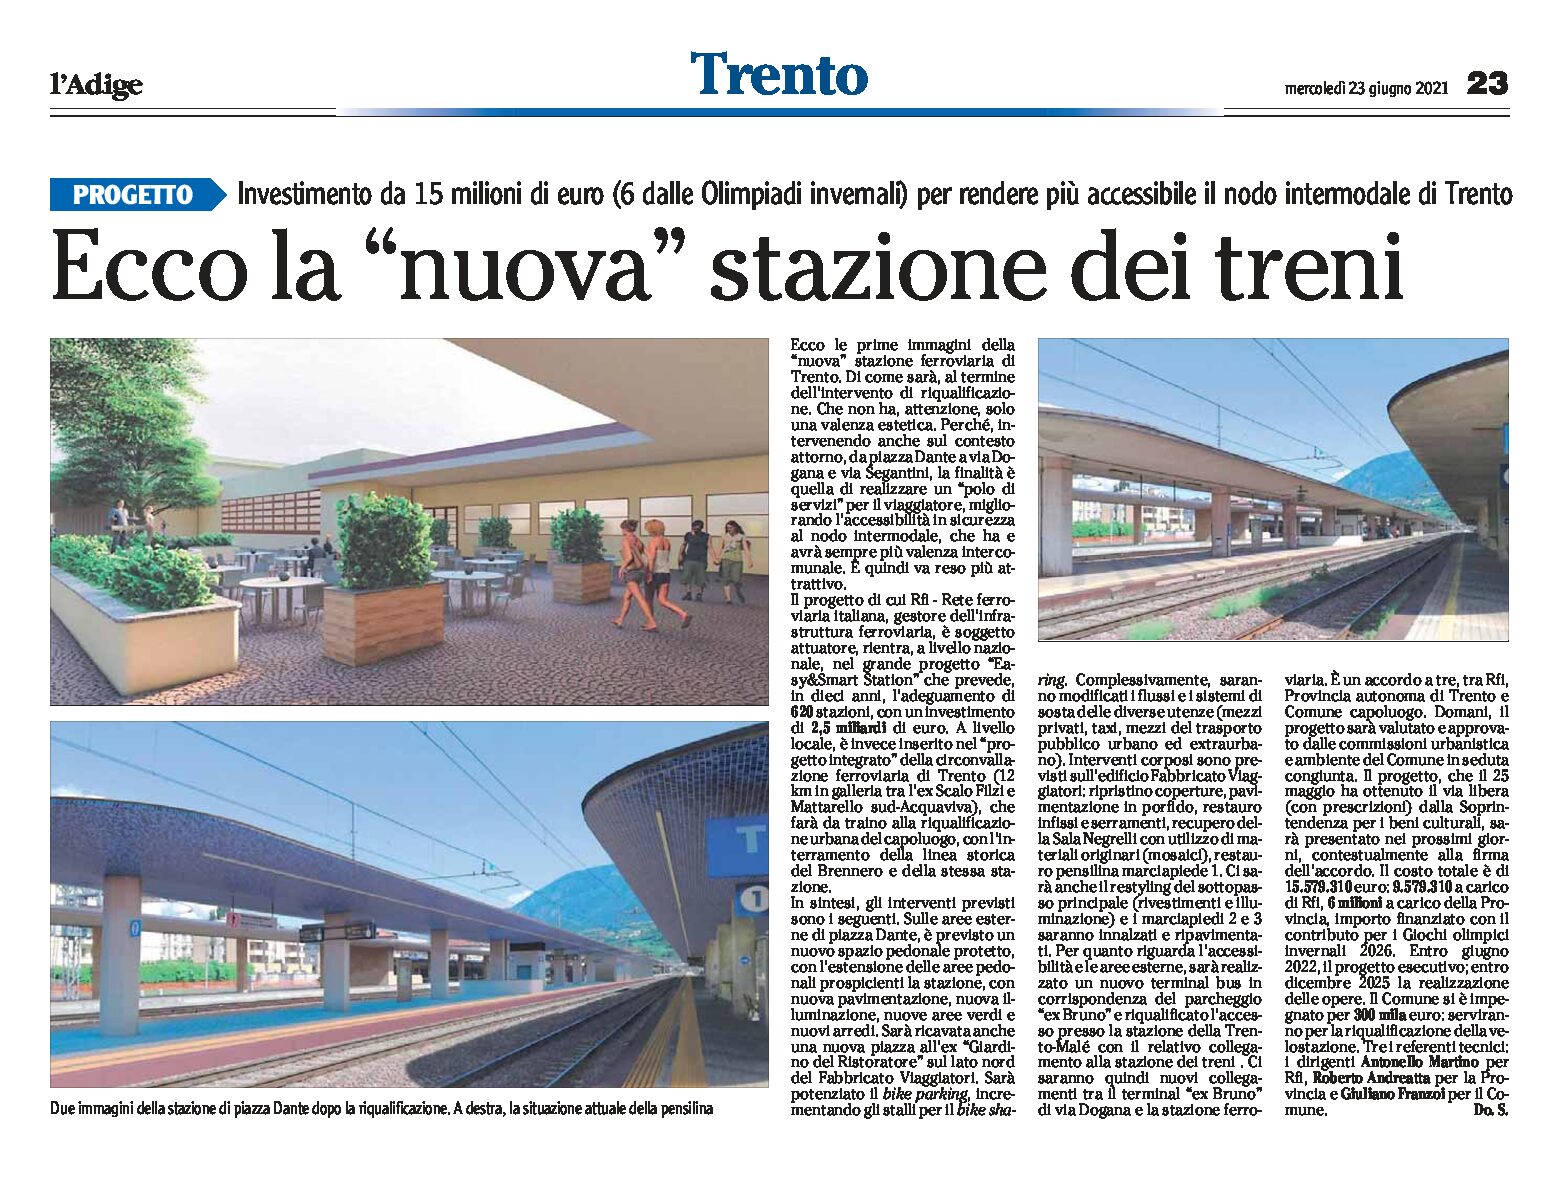 Trento: ecco la “nuova” stazione dei treni